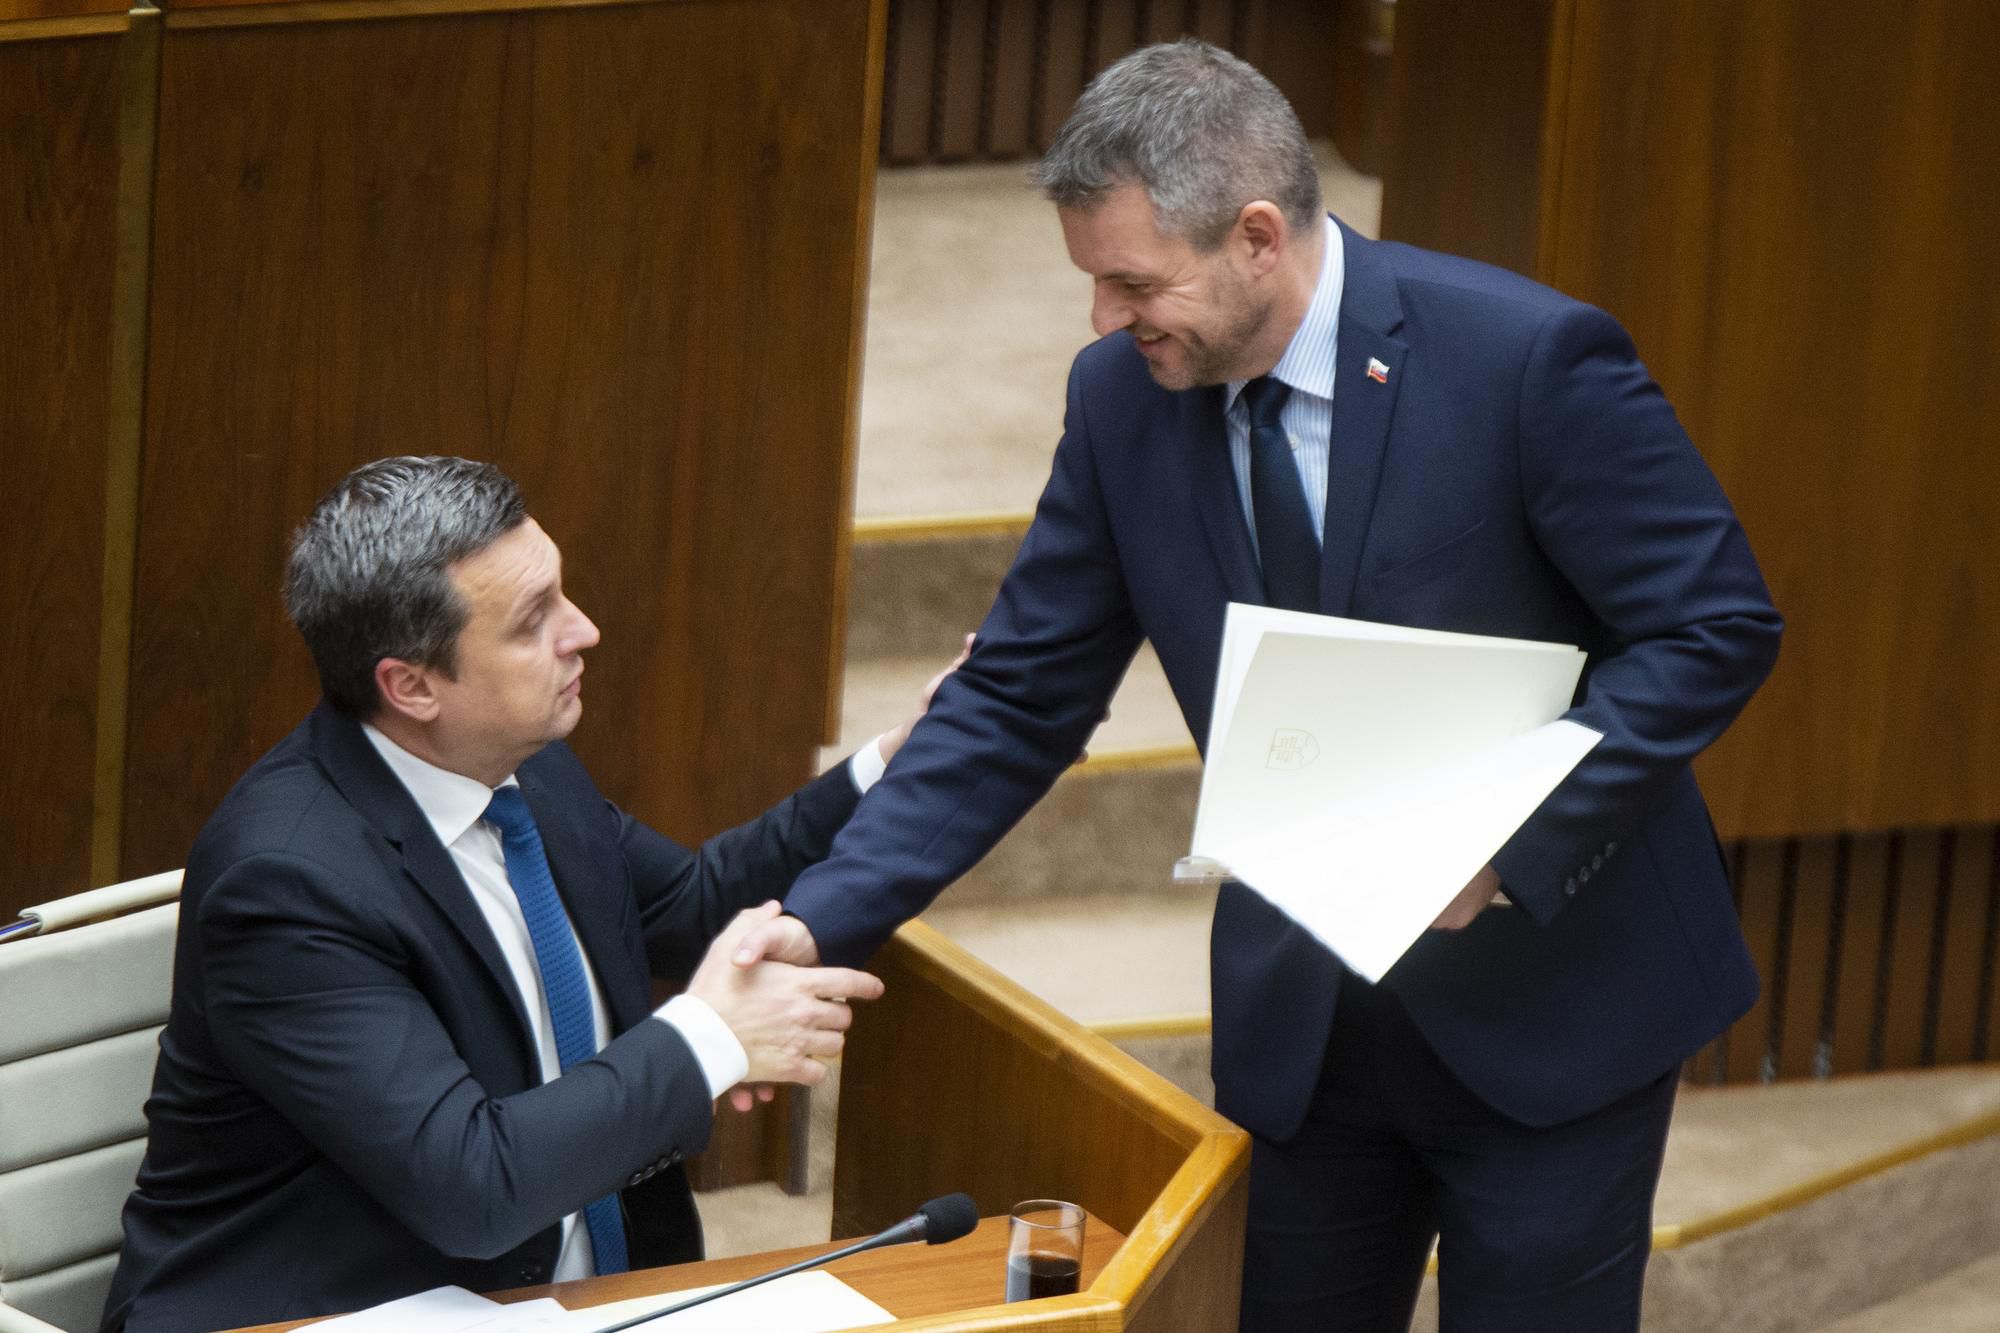 Vľavo predseda NR SR Andrej Danko (SNS) a vpravo predseda vlády SR Peter Pellegrini (Smer-SD).